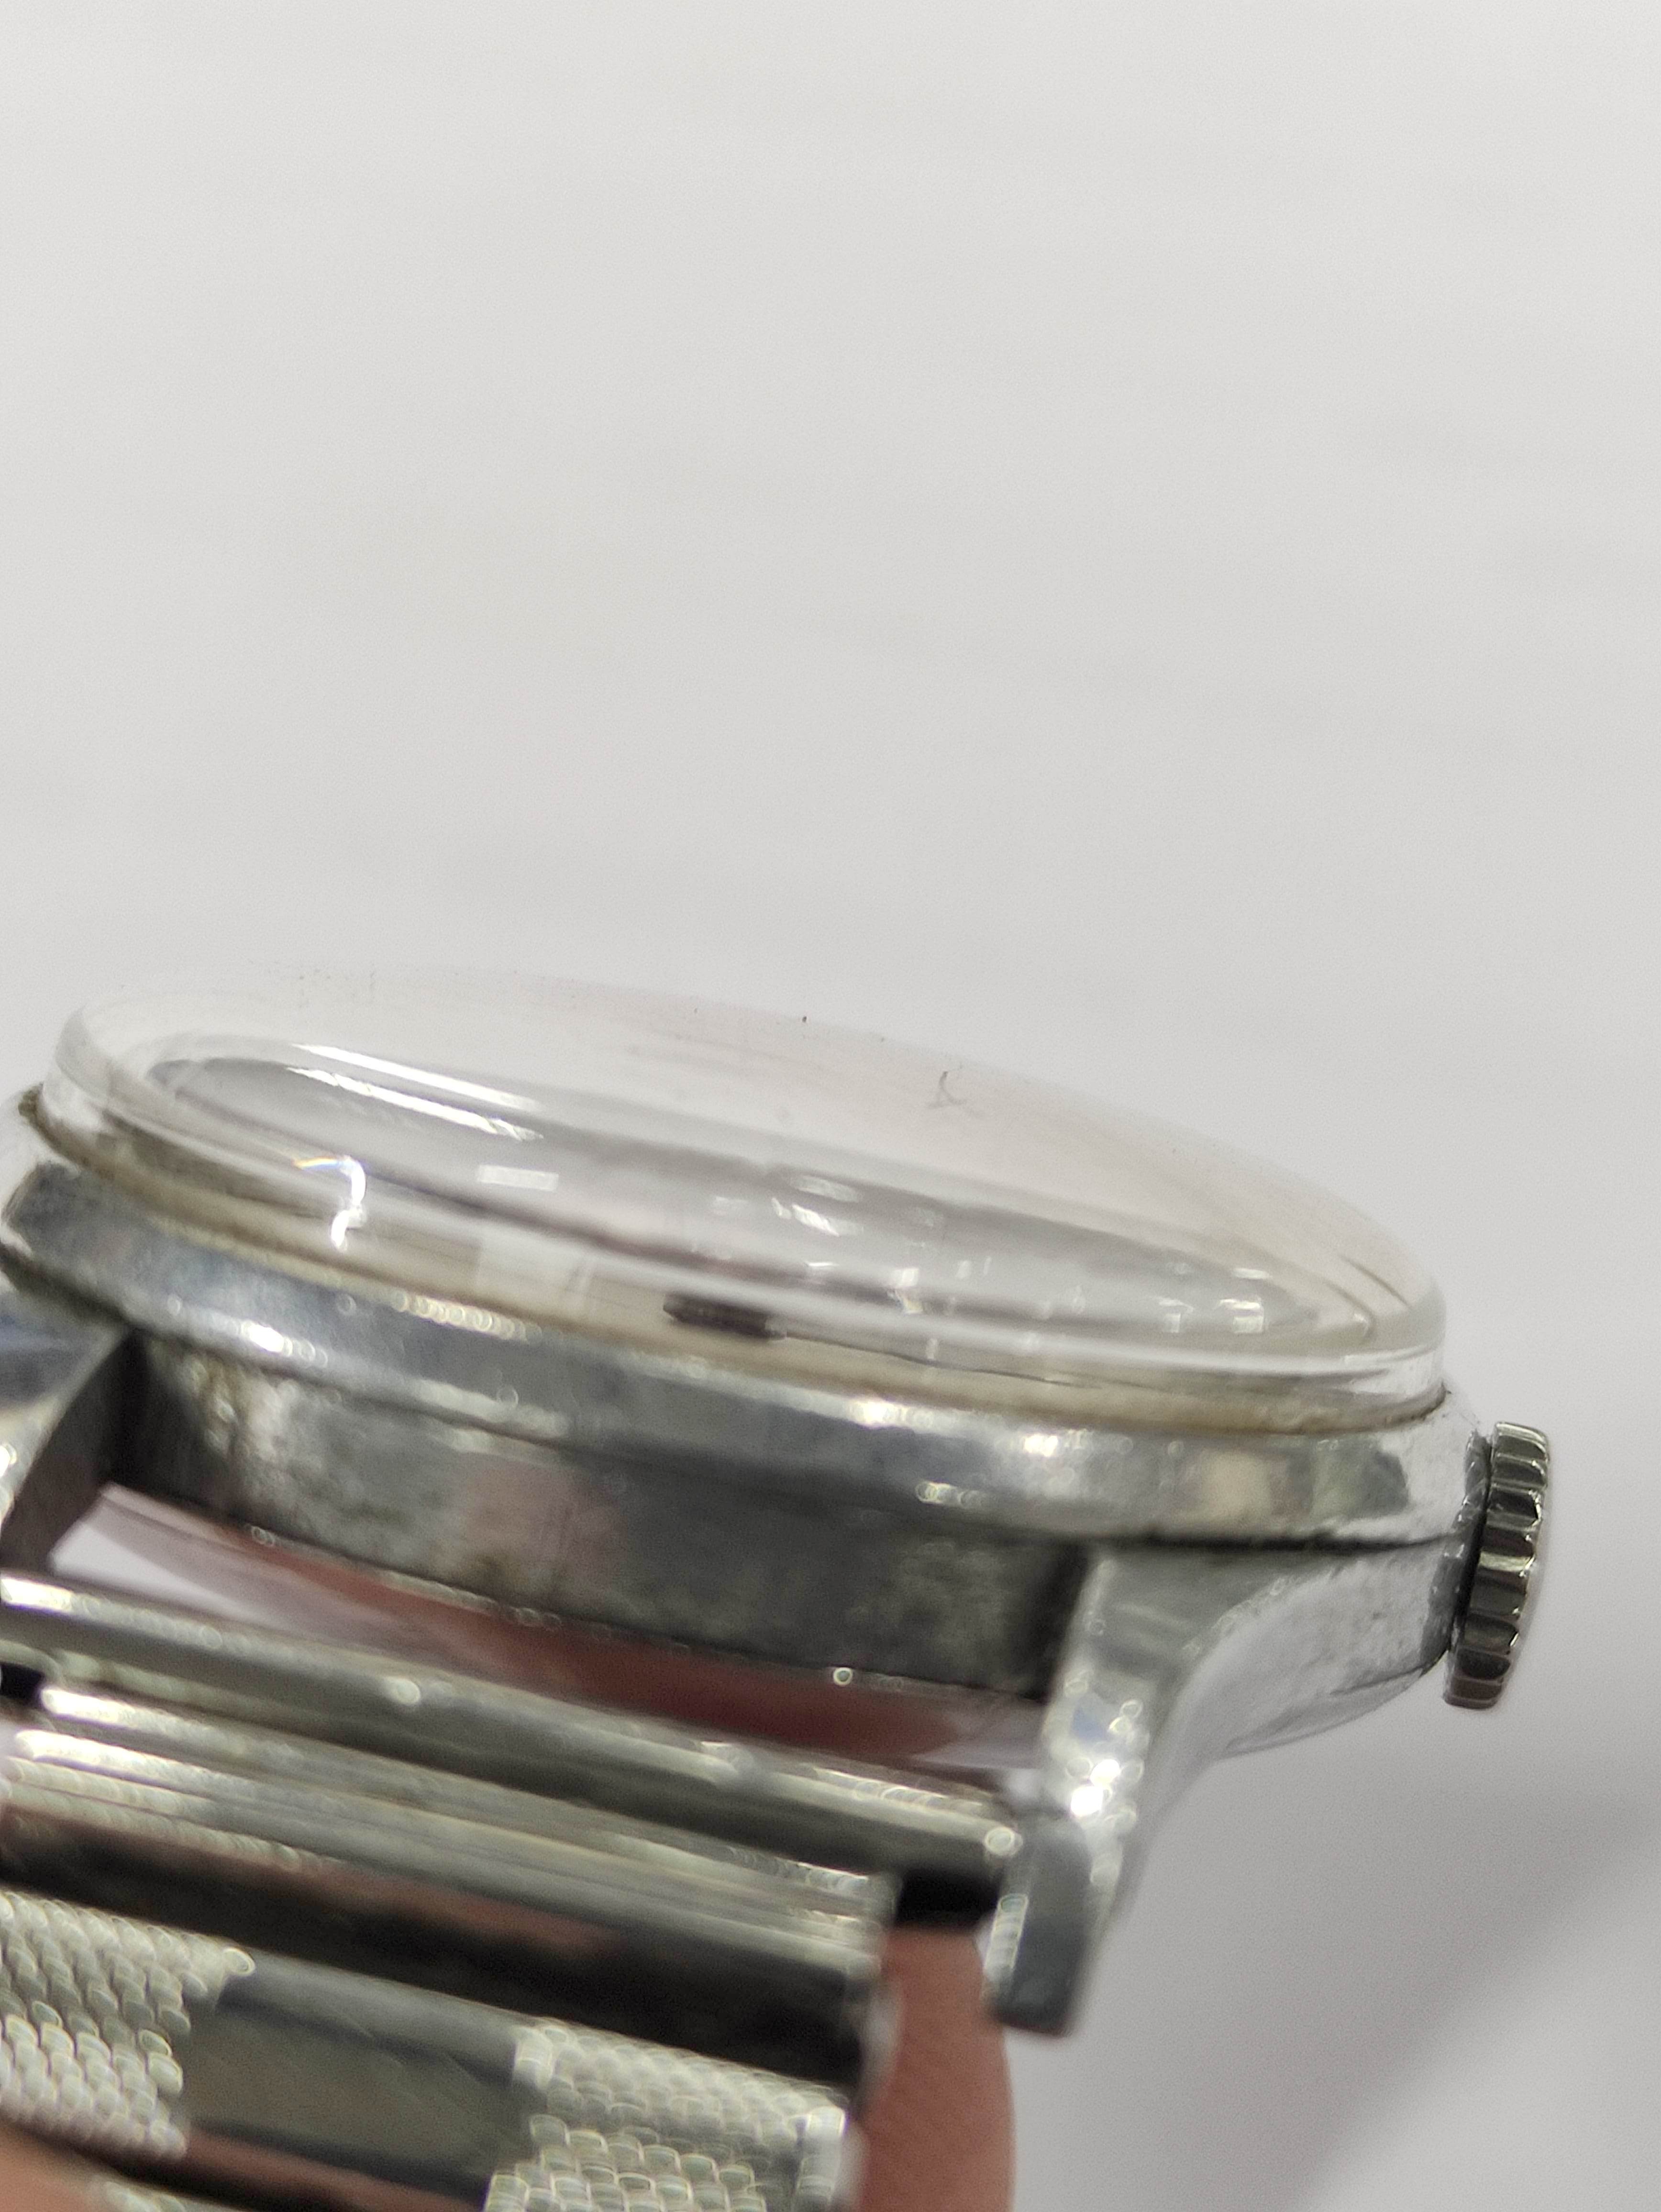 Omega Navigator watch, calibre 30T25C, No 9862181, 6B159 on bracelet case 2292,  1943. - Image 7 of 7